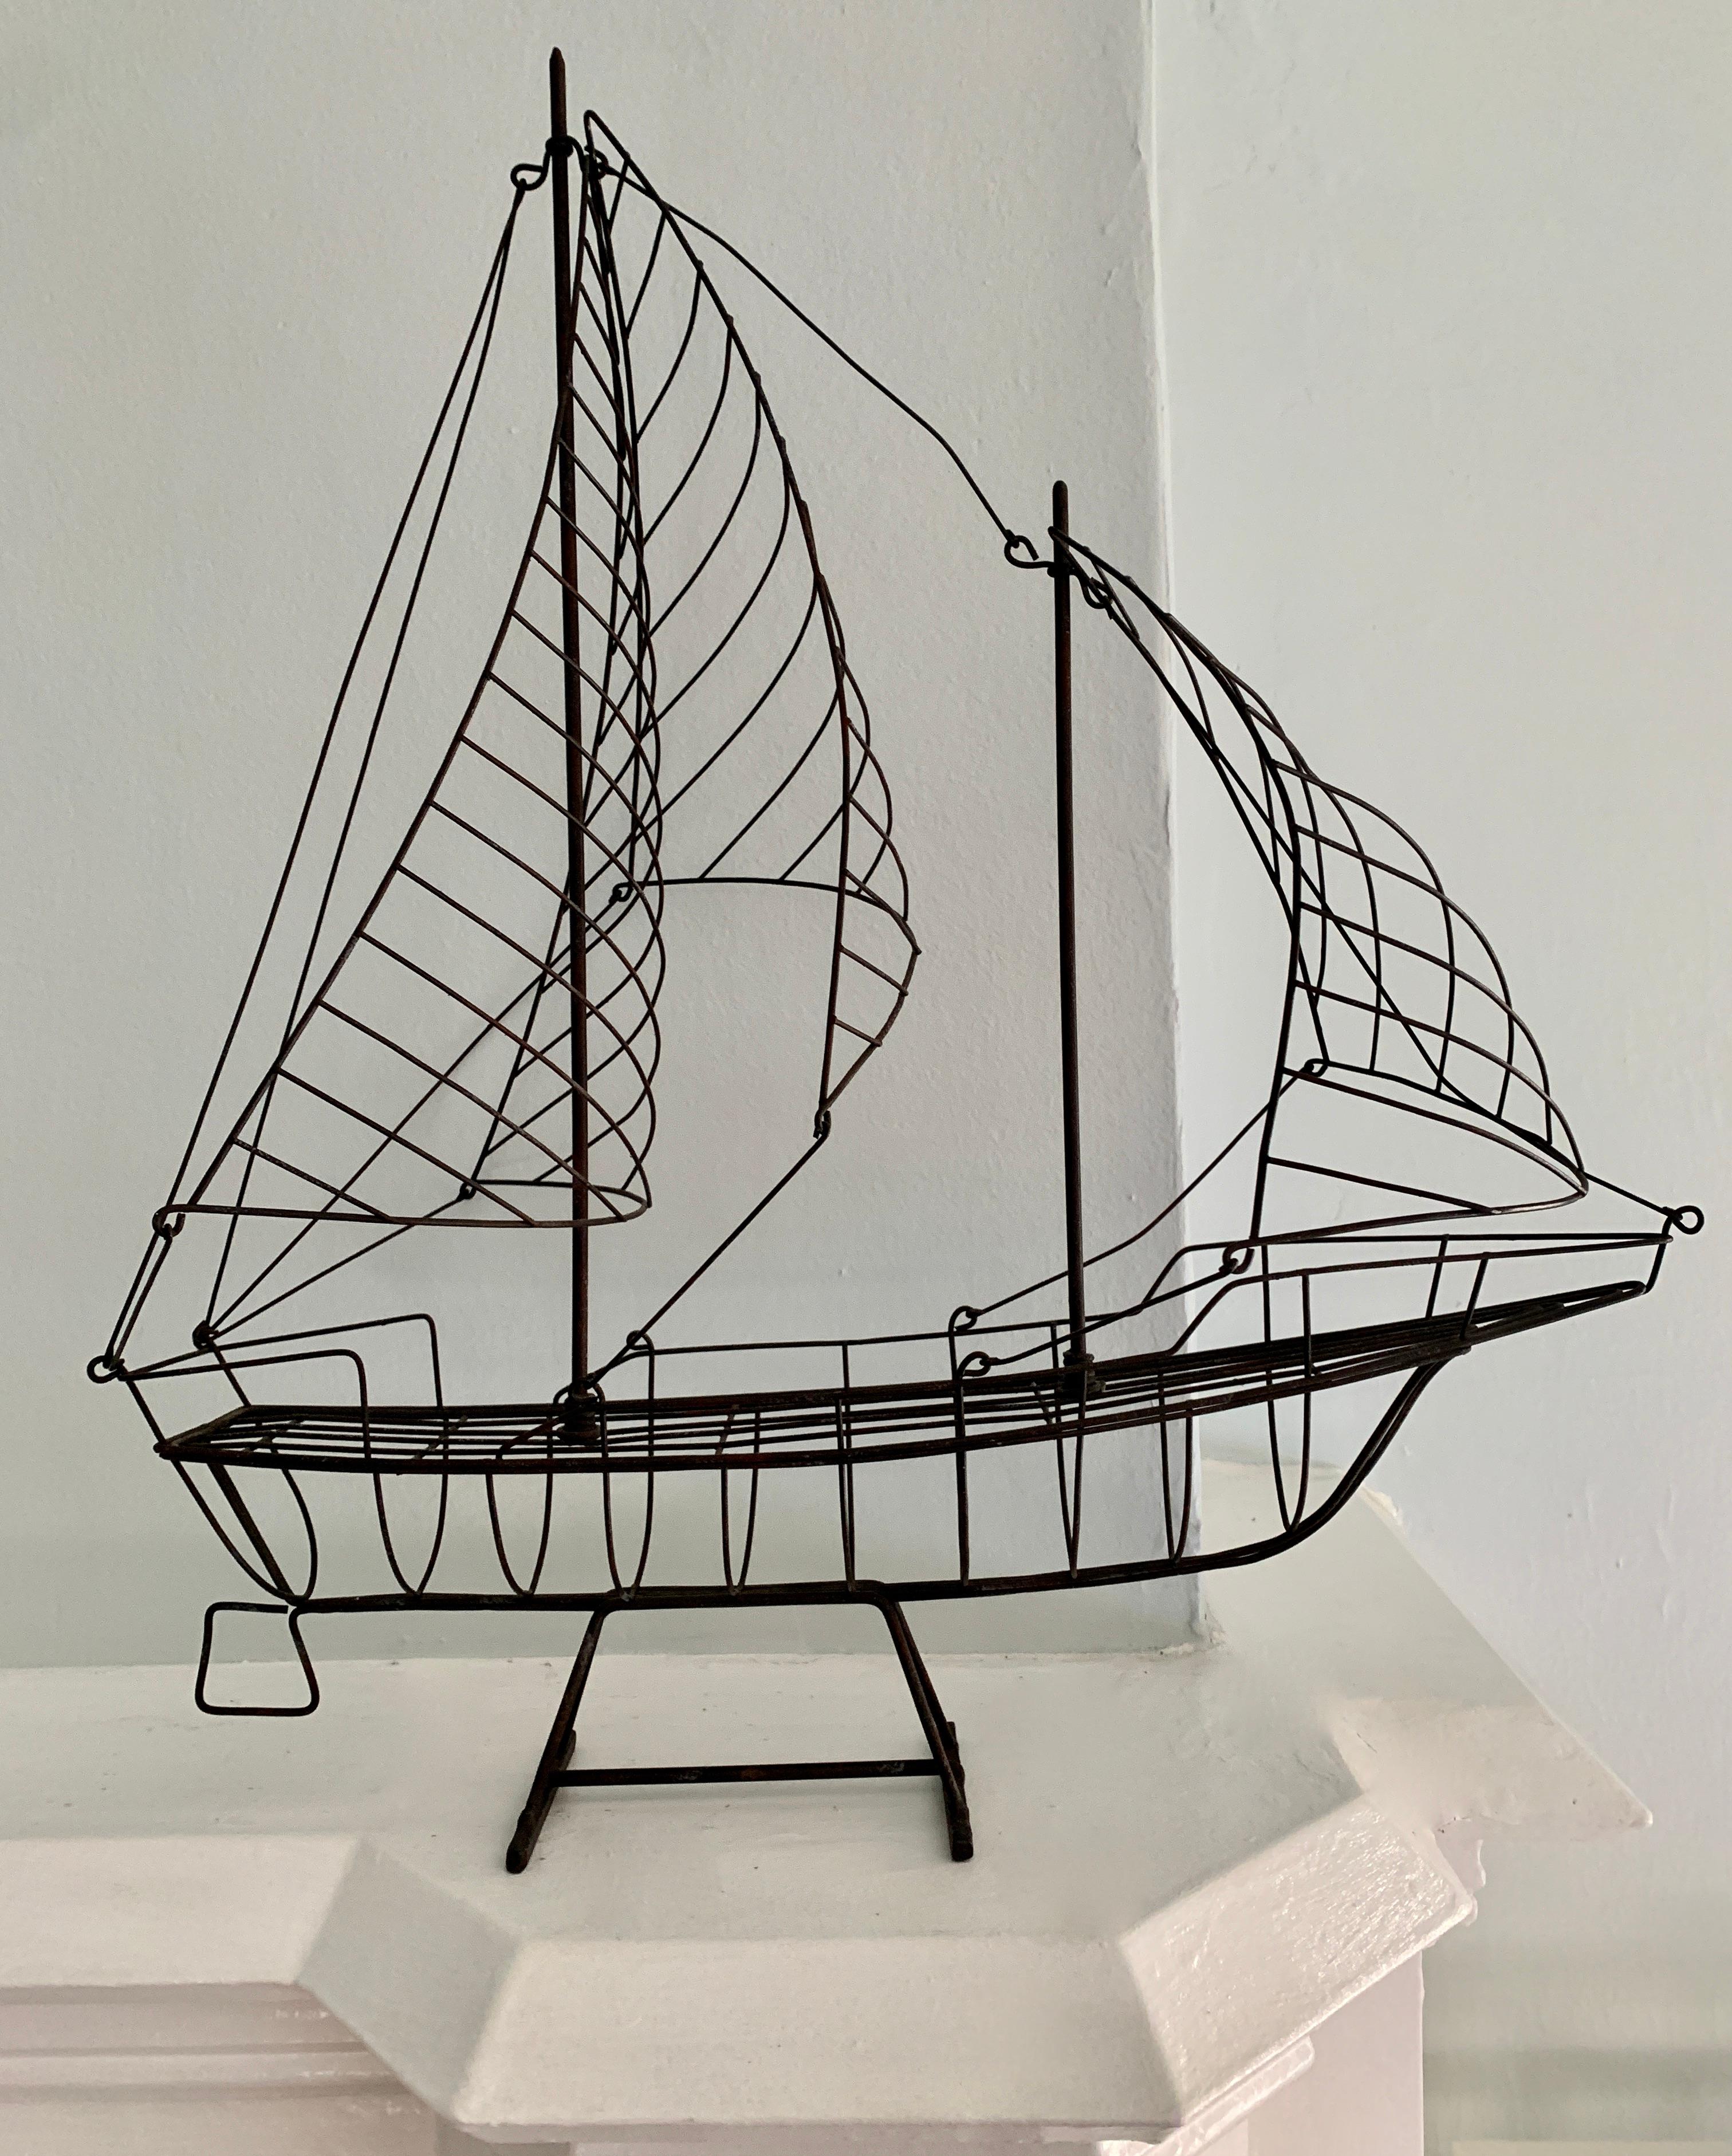 Une merveilleuse sculpture d'un navire avec de grandes ventes de soufflage, cette sculpture simple mais efficace serait parfaite sur n'importe quelle étagère, en particulier pour l'amoureux de la mer ou la maison en bord de mer.